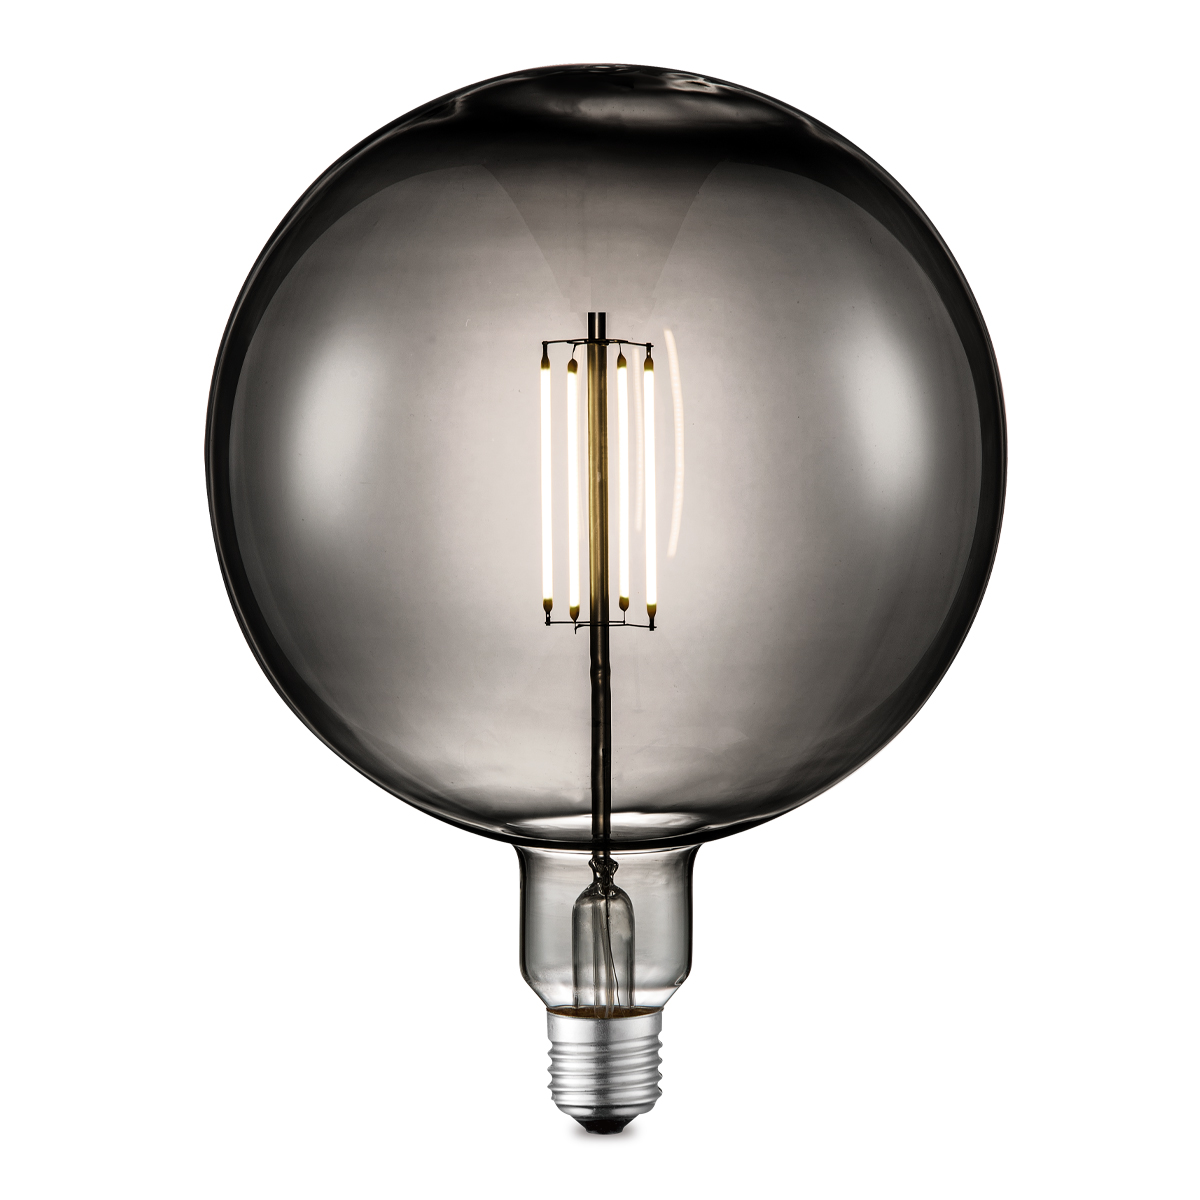 Tangla lighting - TLB-8006-06TM - LED Light Bulb Deco filament - G180 6W titanium - dimmable - E27